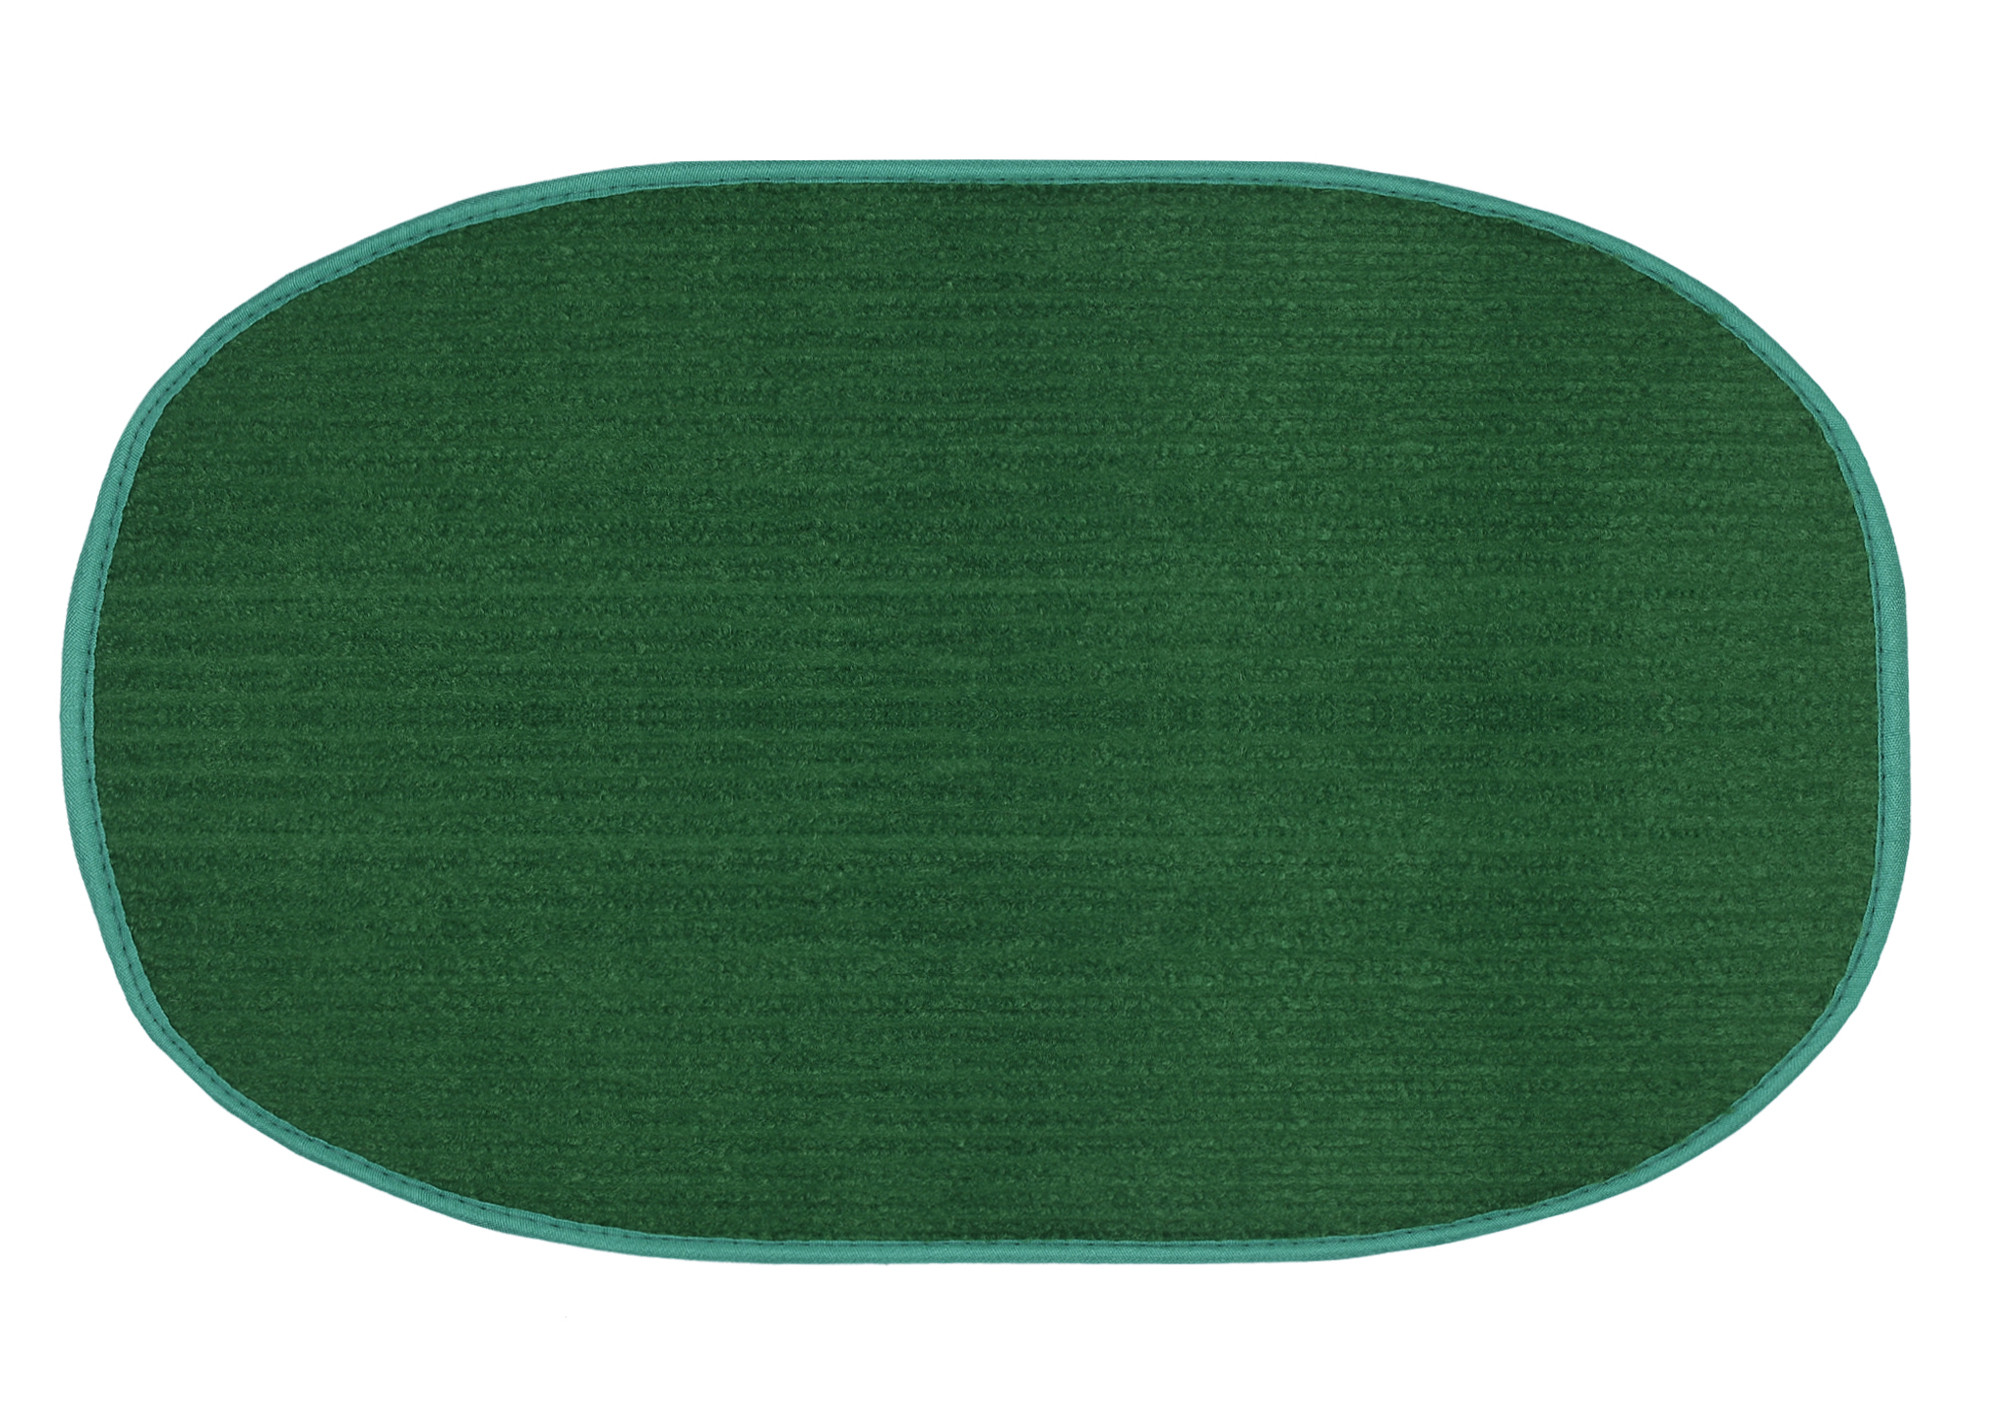 Kuber Industries Oval Shape Durable Microfiber Door Mat, Heavy Duty Doormat, Indoor Outdoor, Easy Clean, Waterproof, Low-Profile Mats for Entry, Patio, Garage (Set Of 2,14'' x 23'',Red & Green)-KUBMRT12099